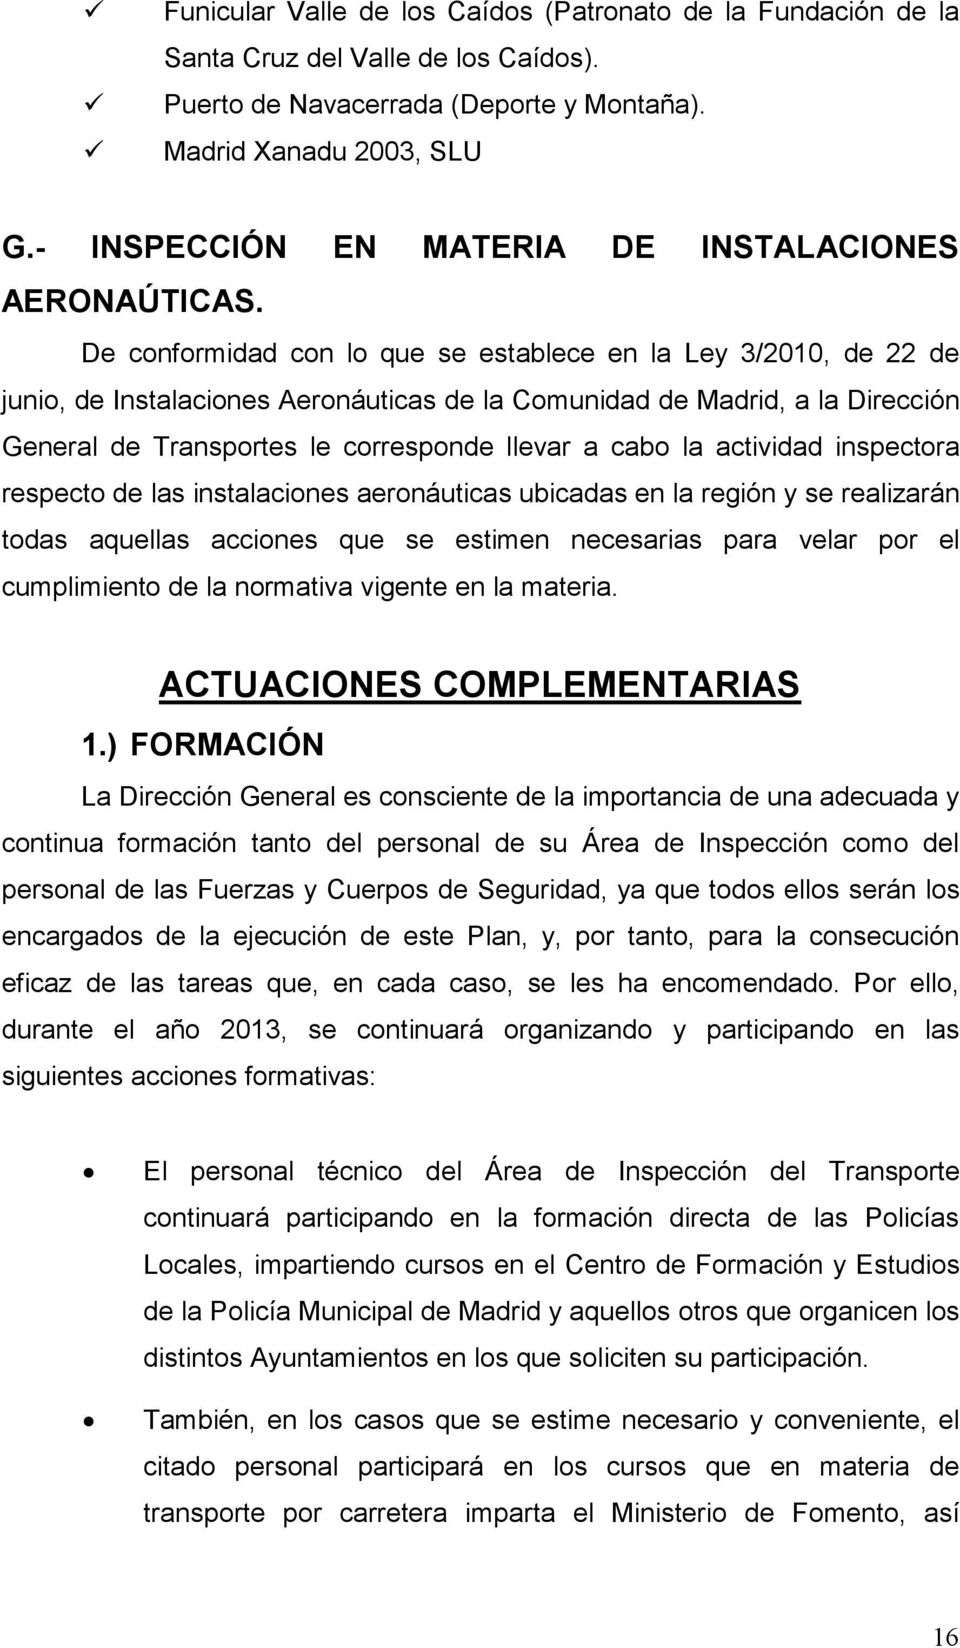 De conformidad con lo que se establece en la Ley 3/2010, de 22 de junio, de Instalaciones Aeronáuticas de la Comunidad de Madrid, a la Dirección General de Transportes le corresponde llevar a cabo la